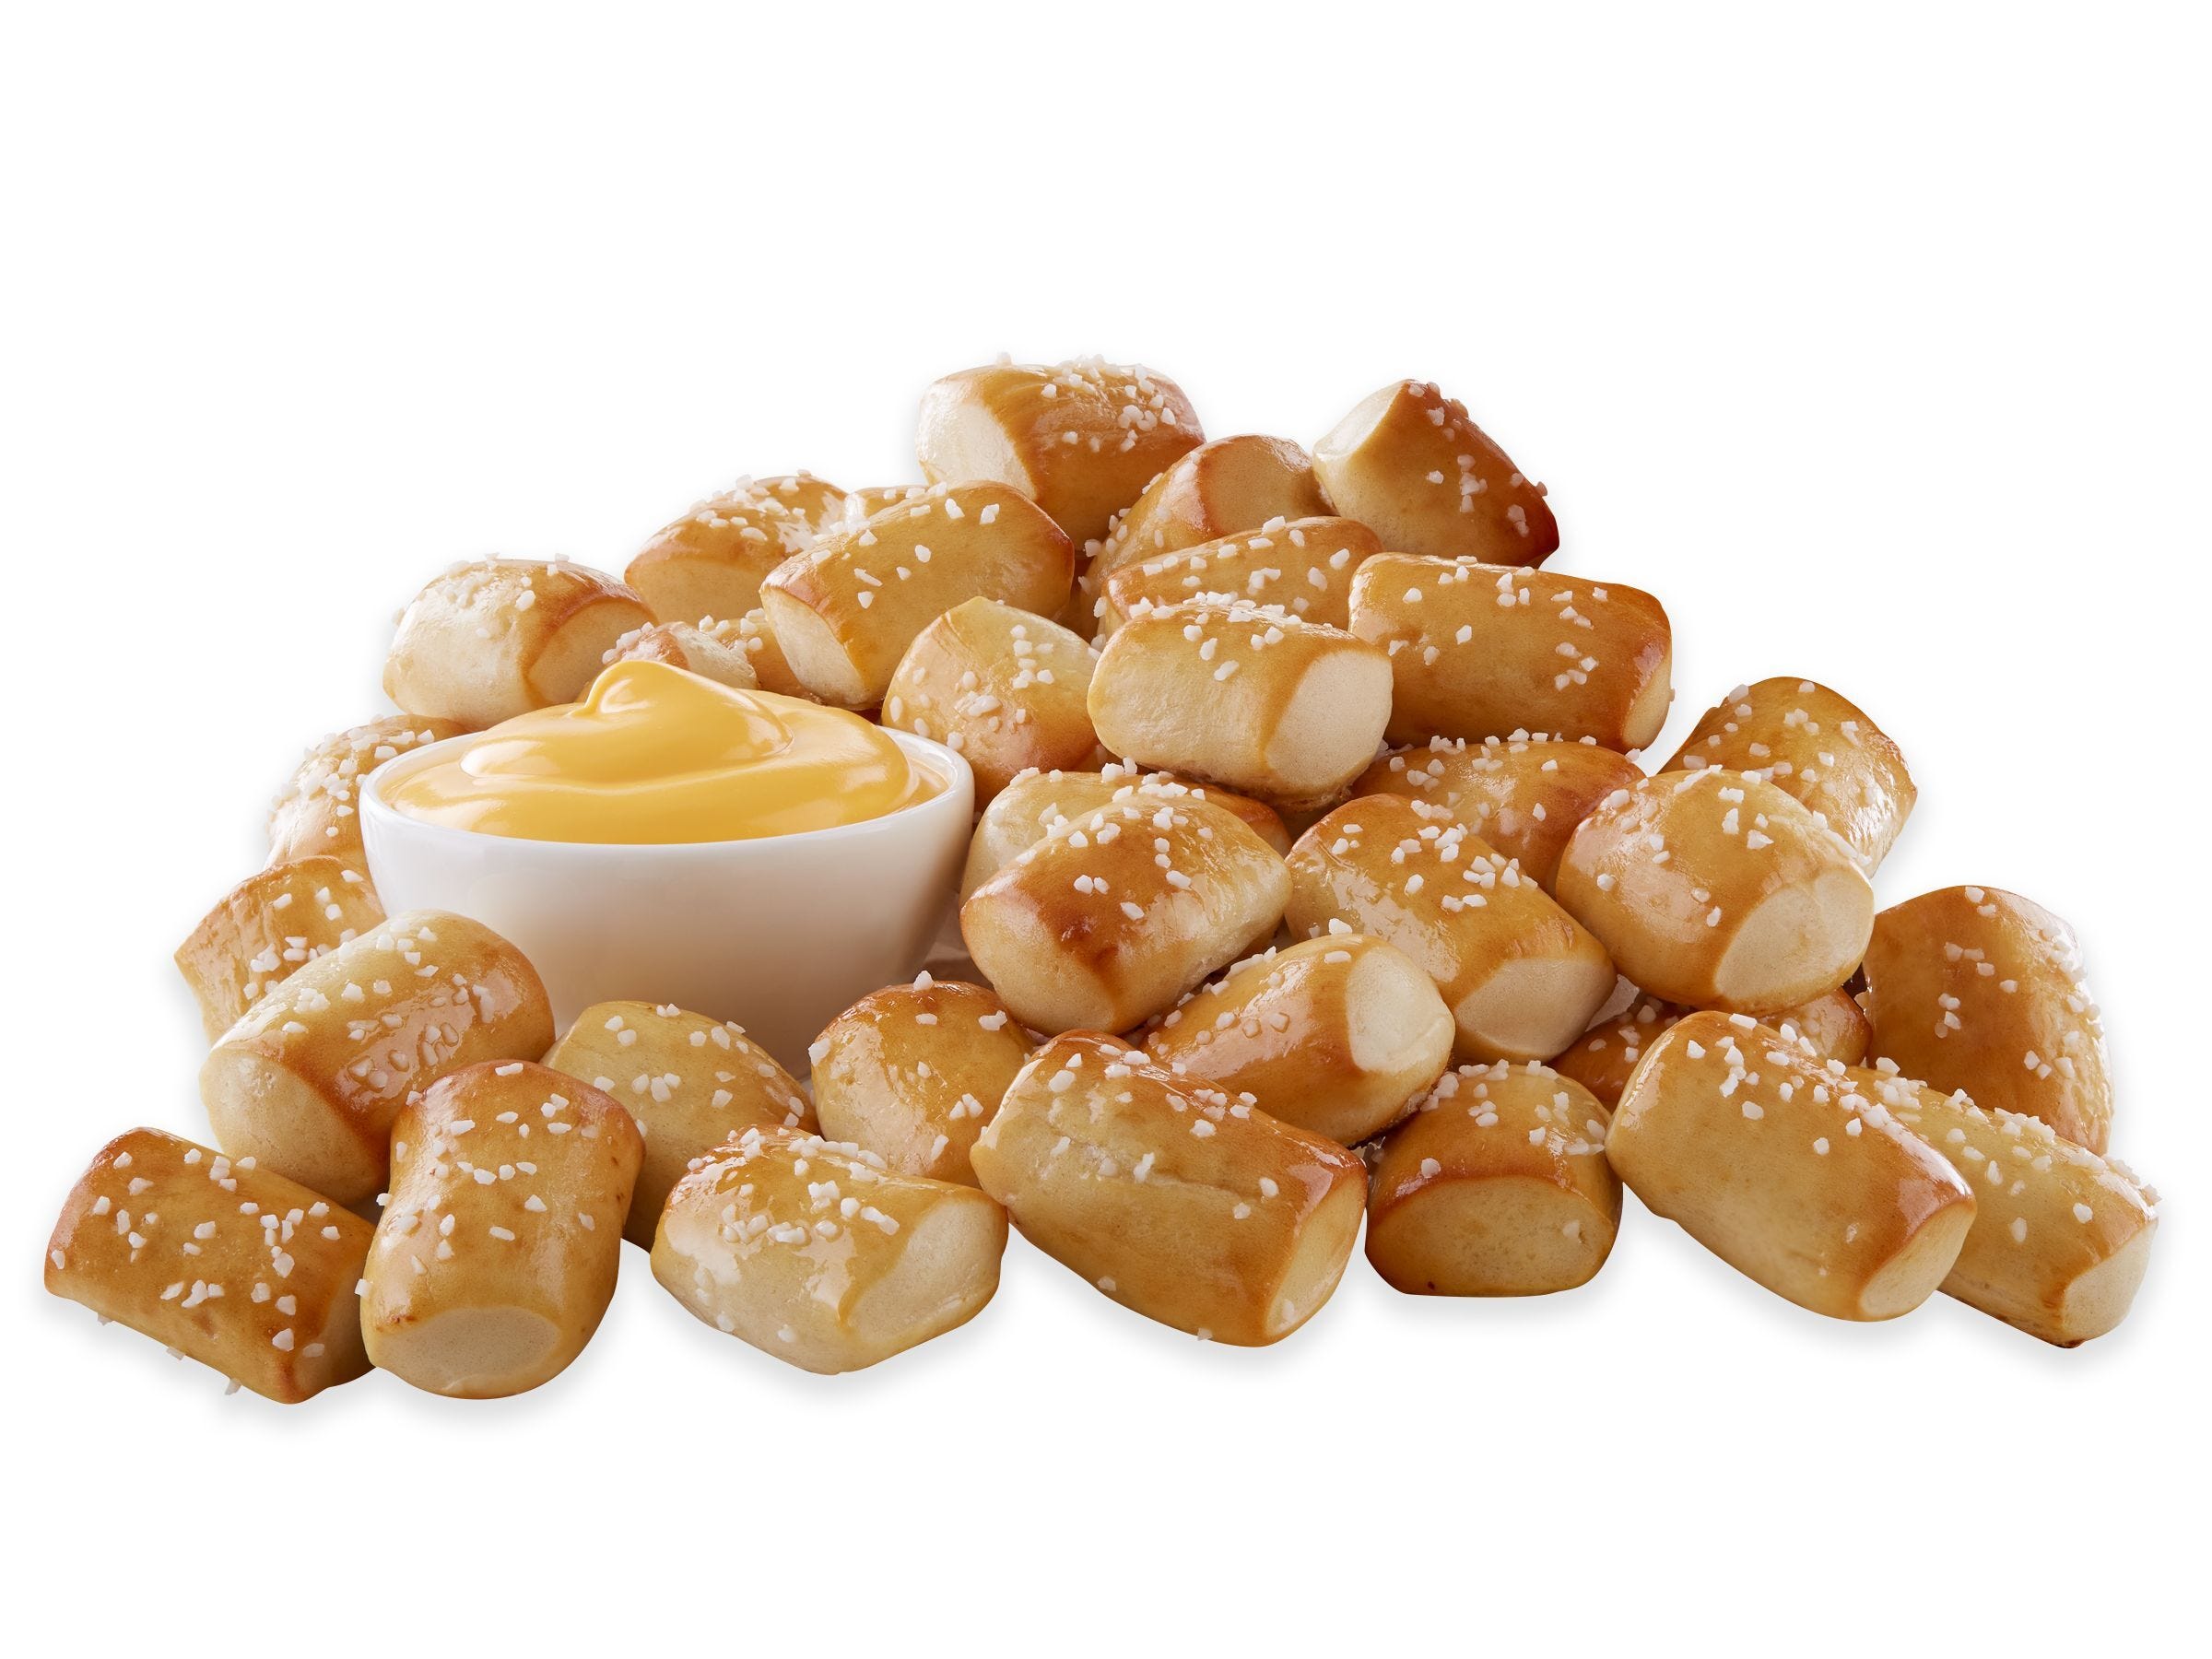 how to, national pretzel day: how to get free pretzel at auntie anne's, wetzel's pretzels